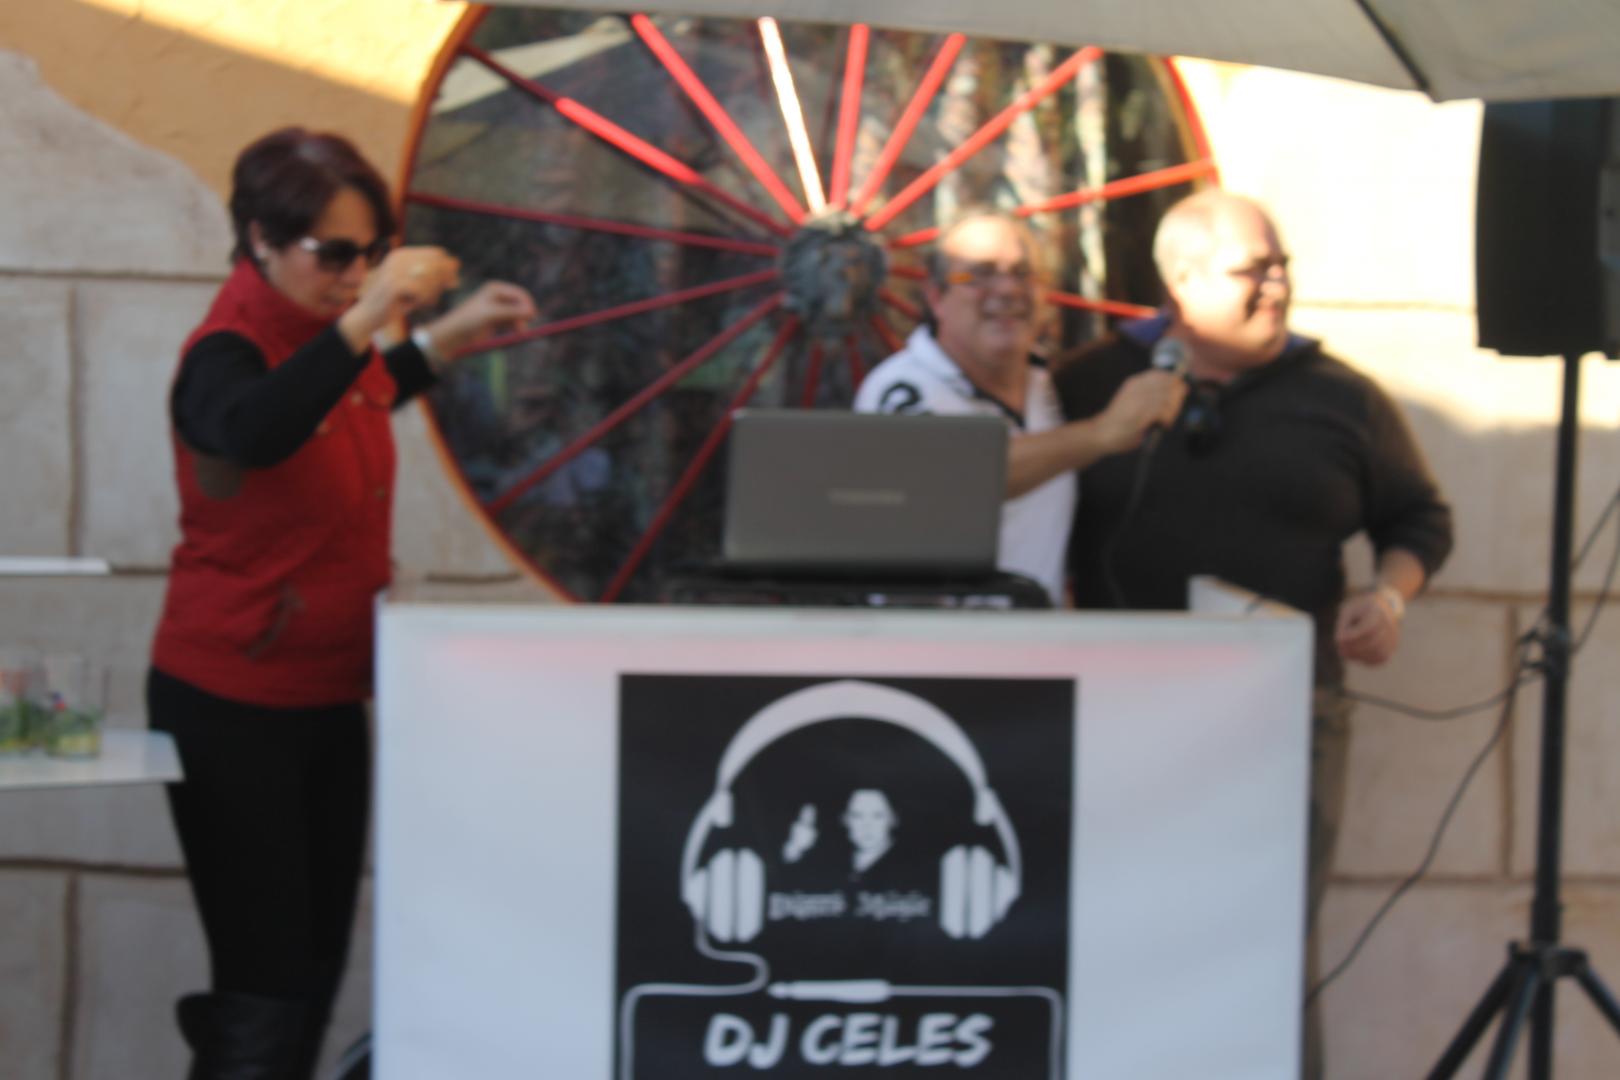 Finca Mi Capricho en Algezares con Celes DJ